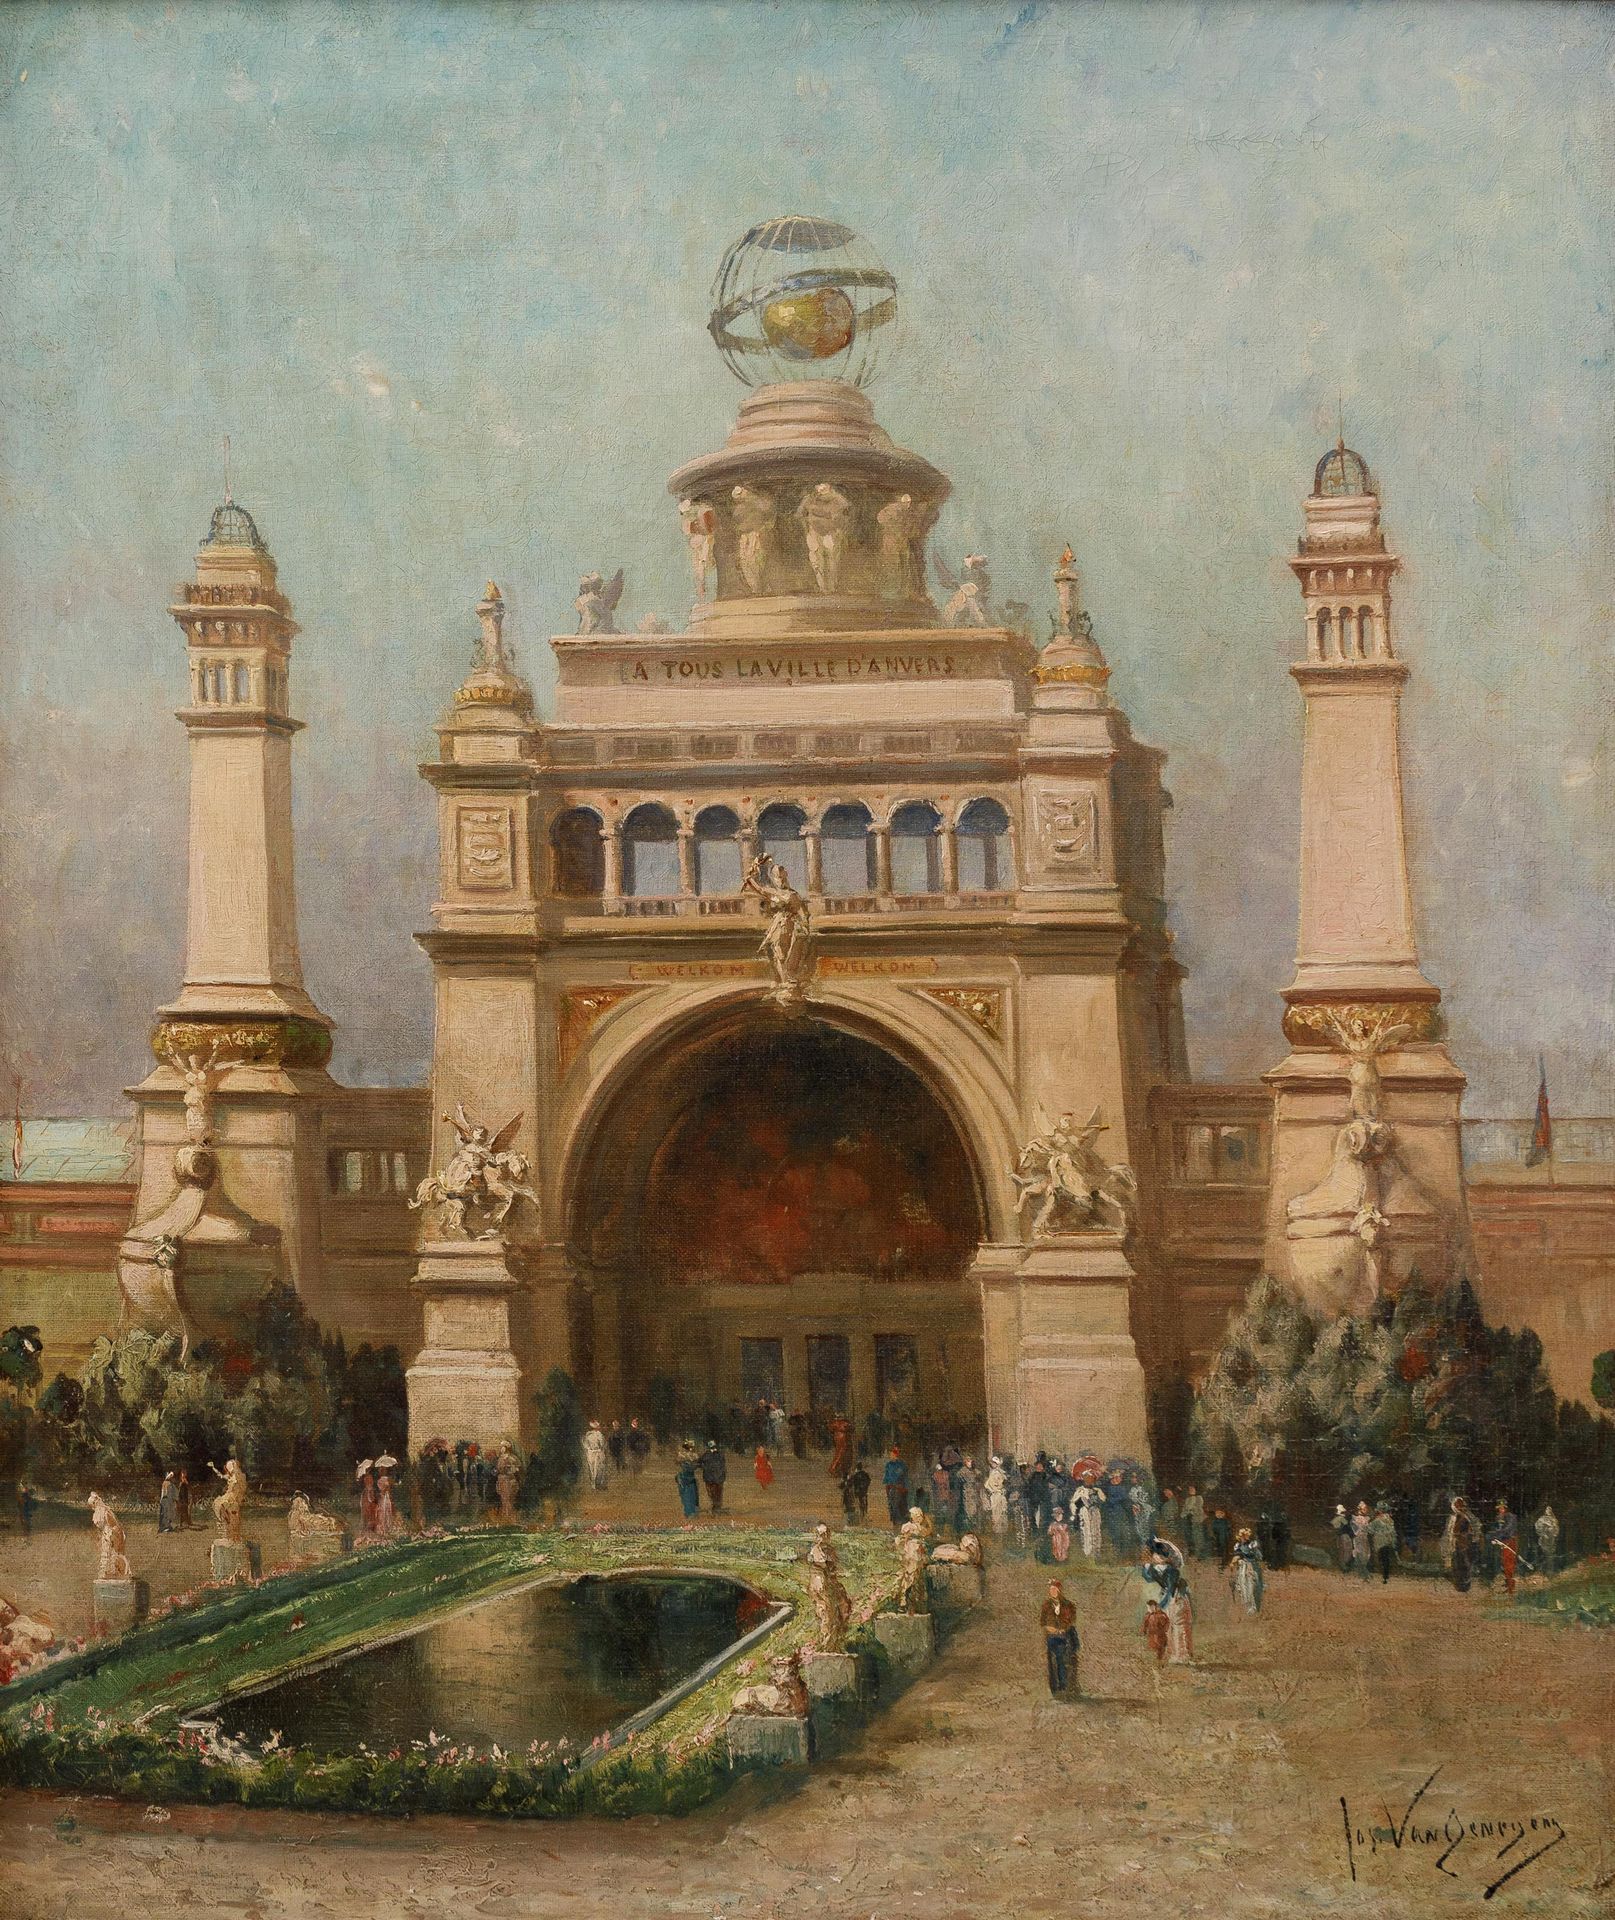 JOS VAN GENEGEN (1857-1936) 1885年安特卫普世界博览会的主入口。

布质。

签名为 "Jos Van Genegen"。

63&hellip;